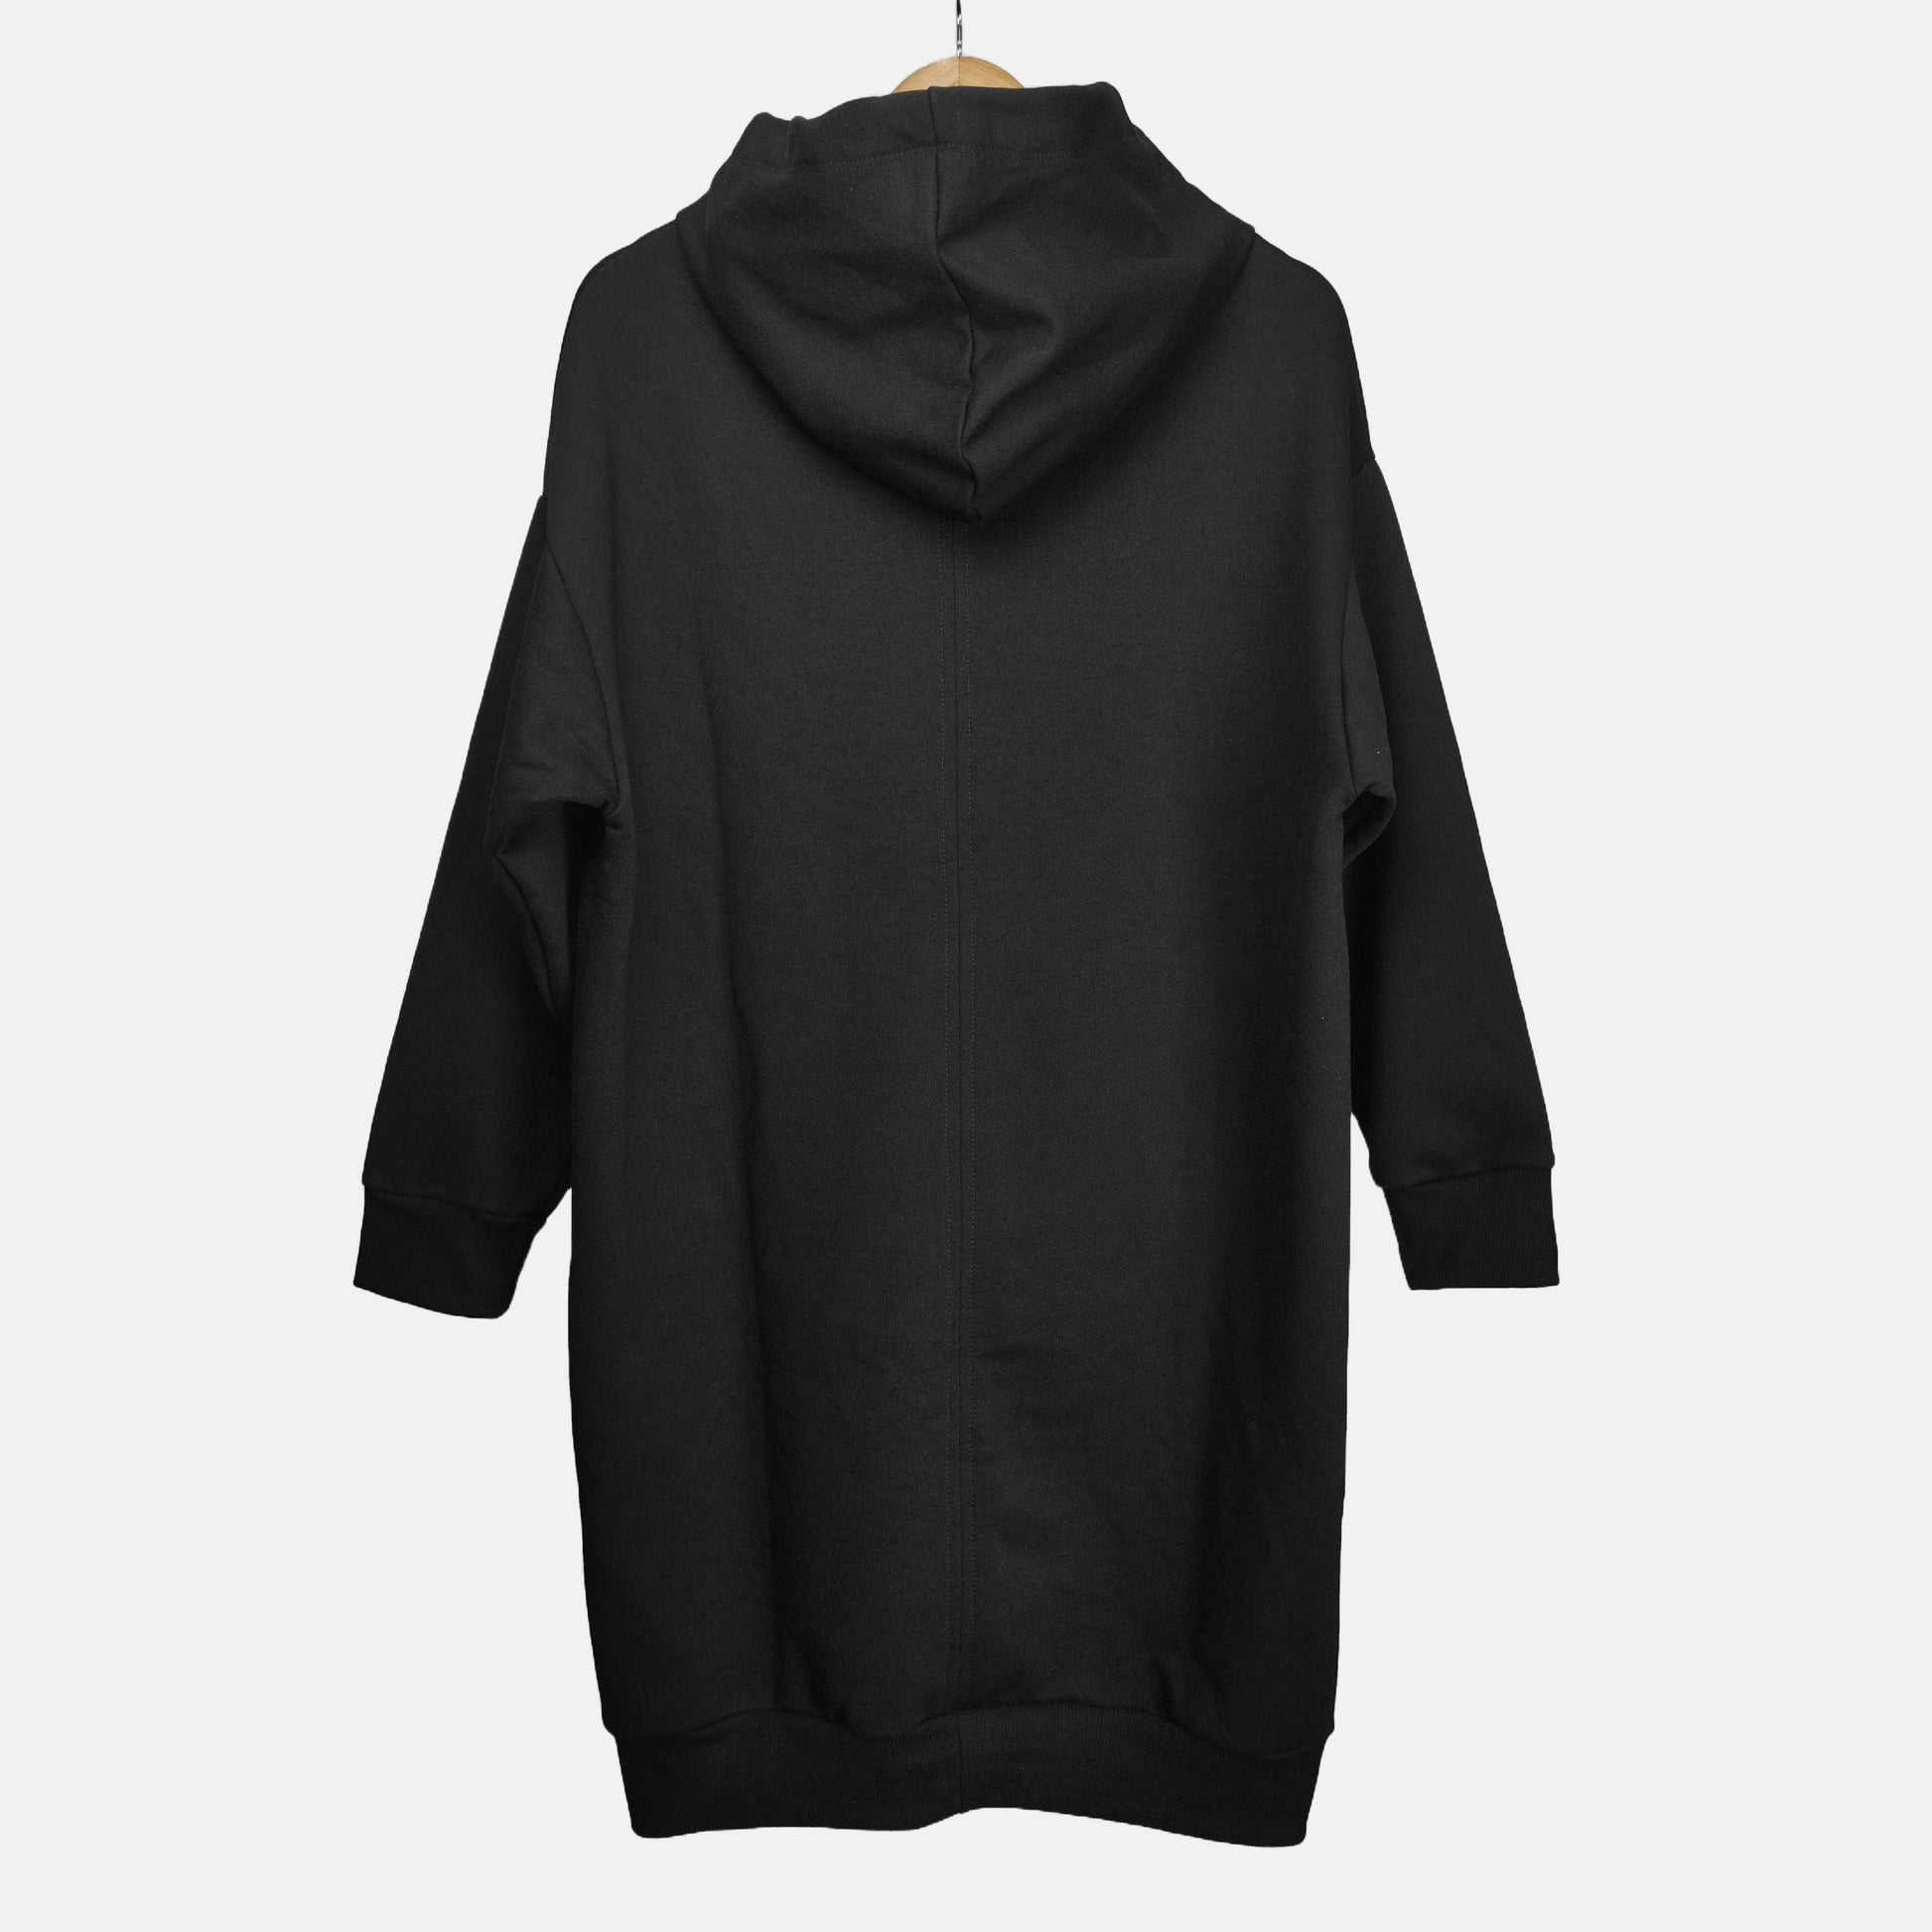 Espalda abrigo o chaqueta larga con capota color negro